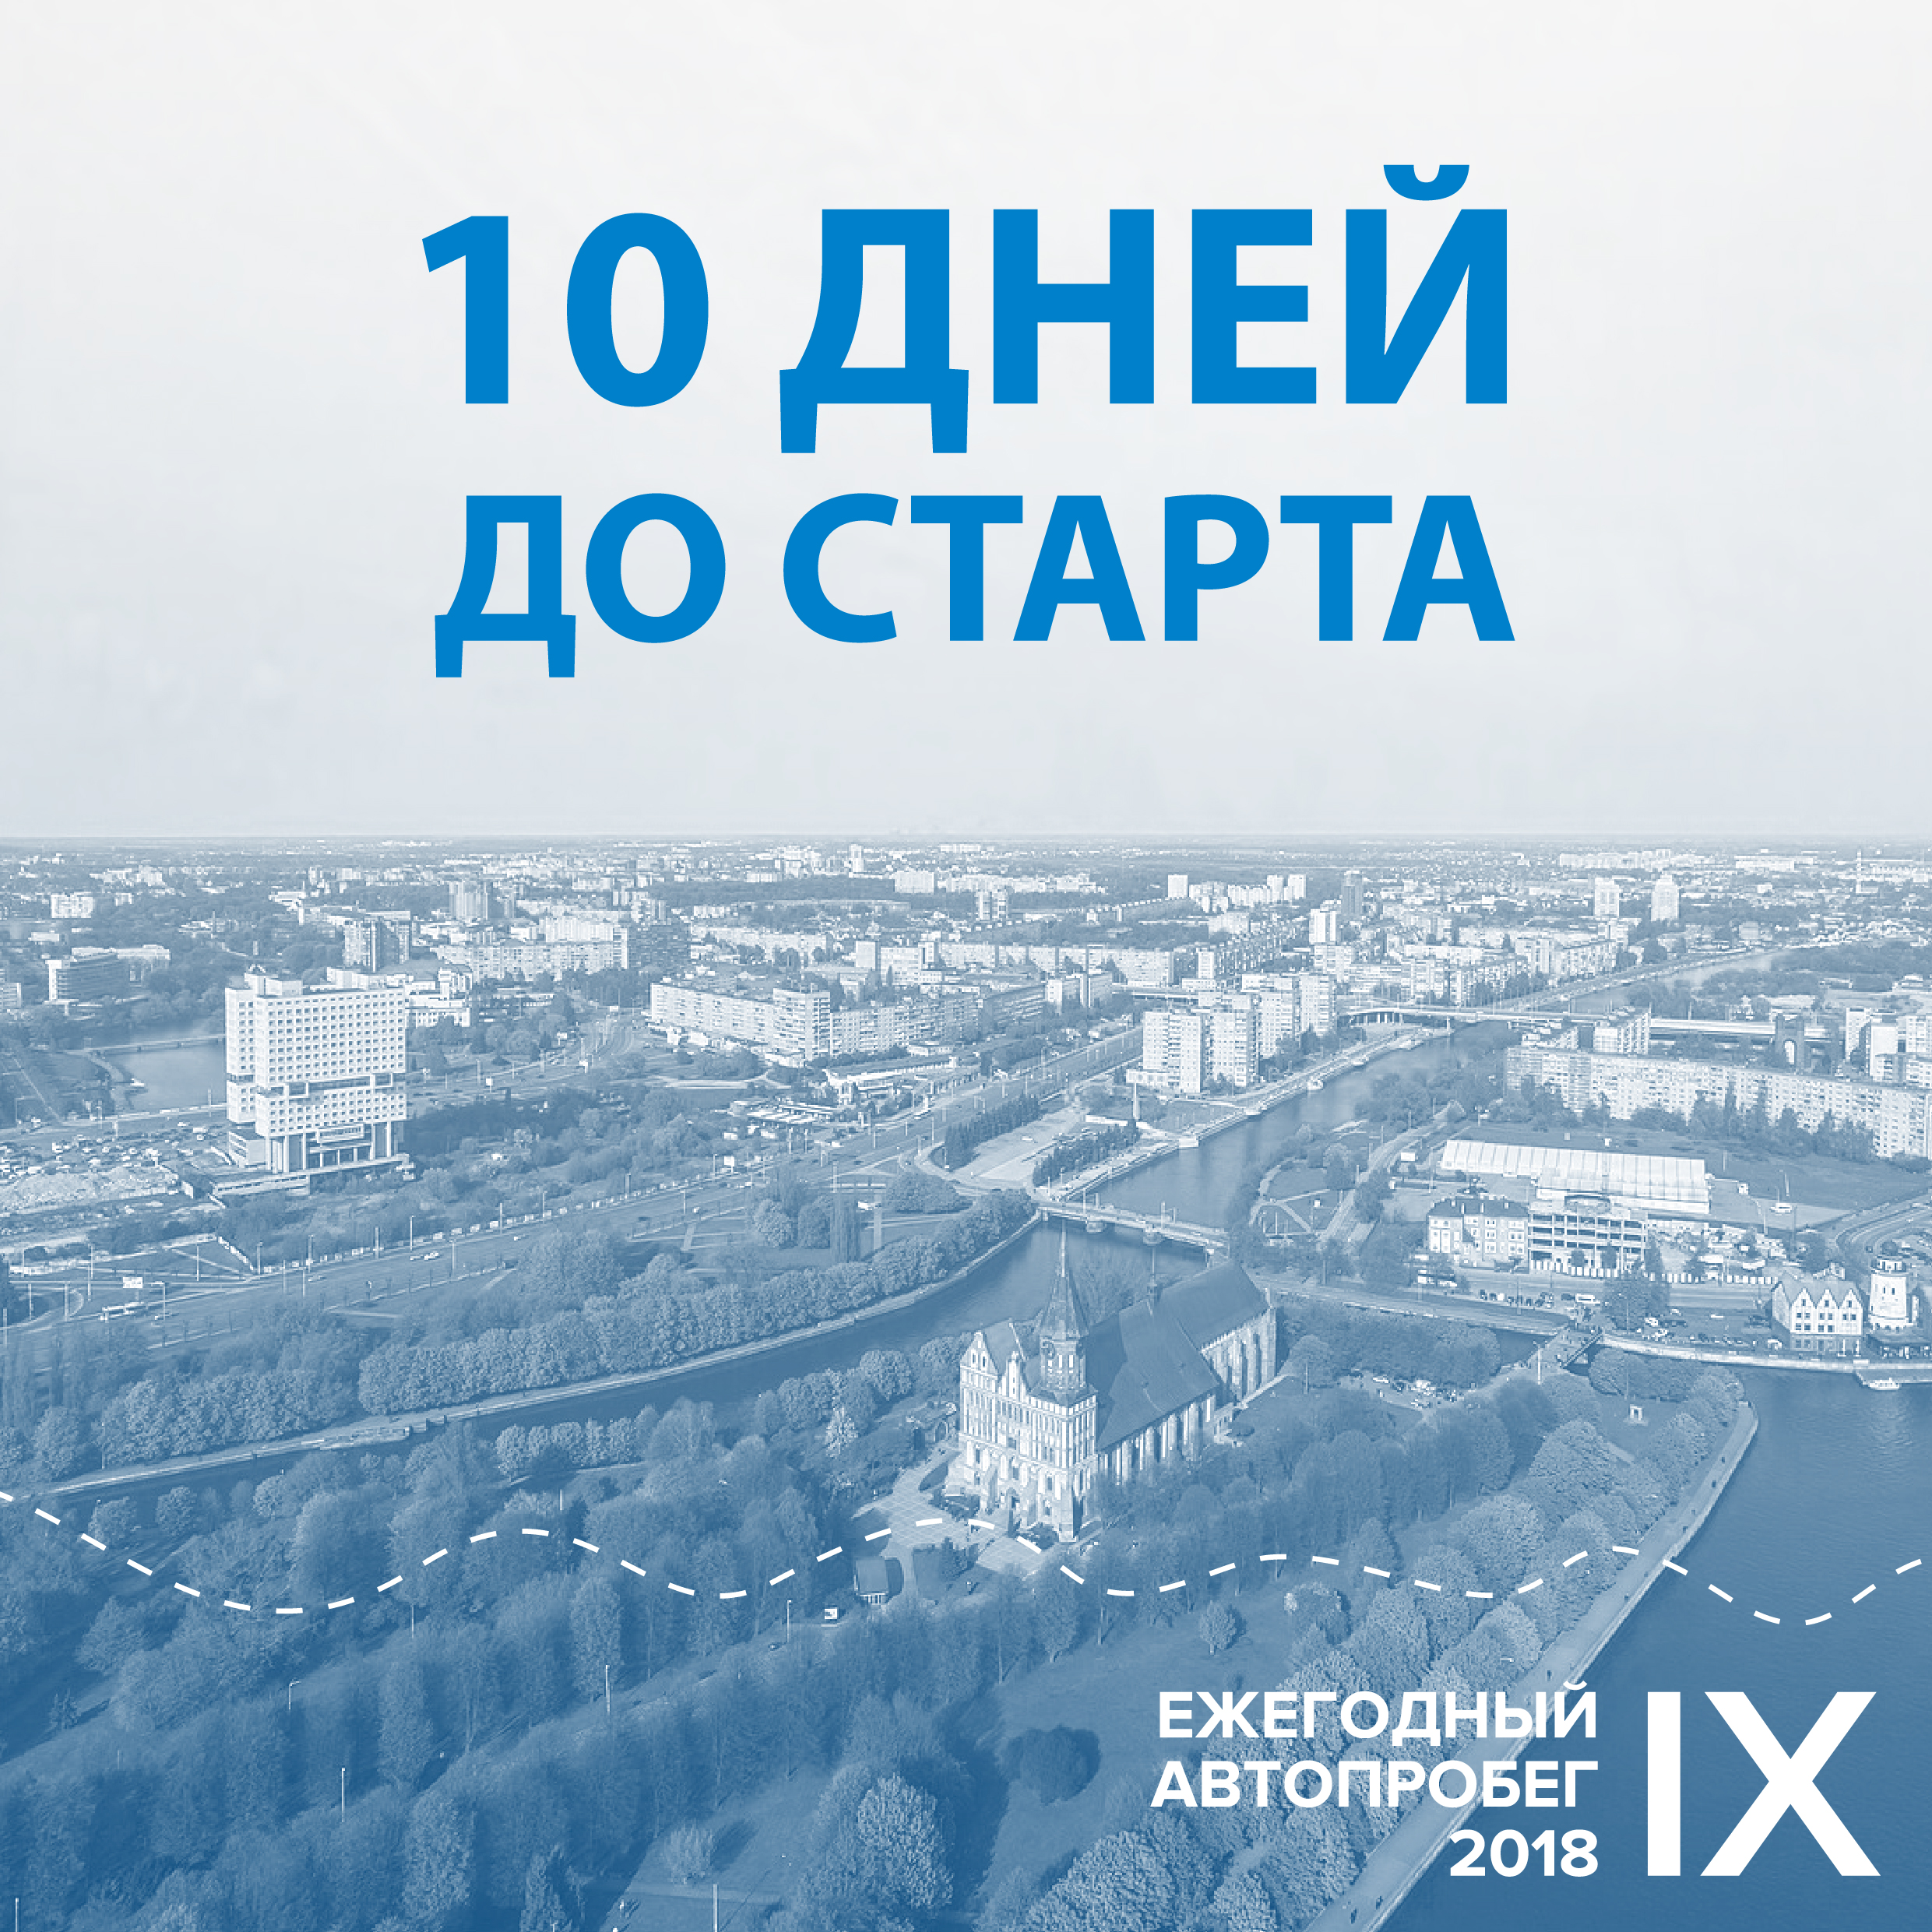 Приглашаем принять участие в открытии Автопробега-2018 в Калининграде!